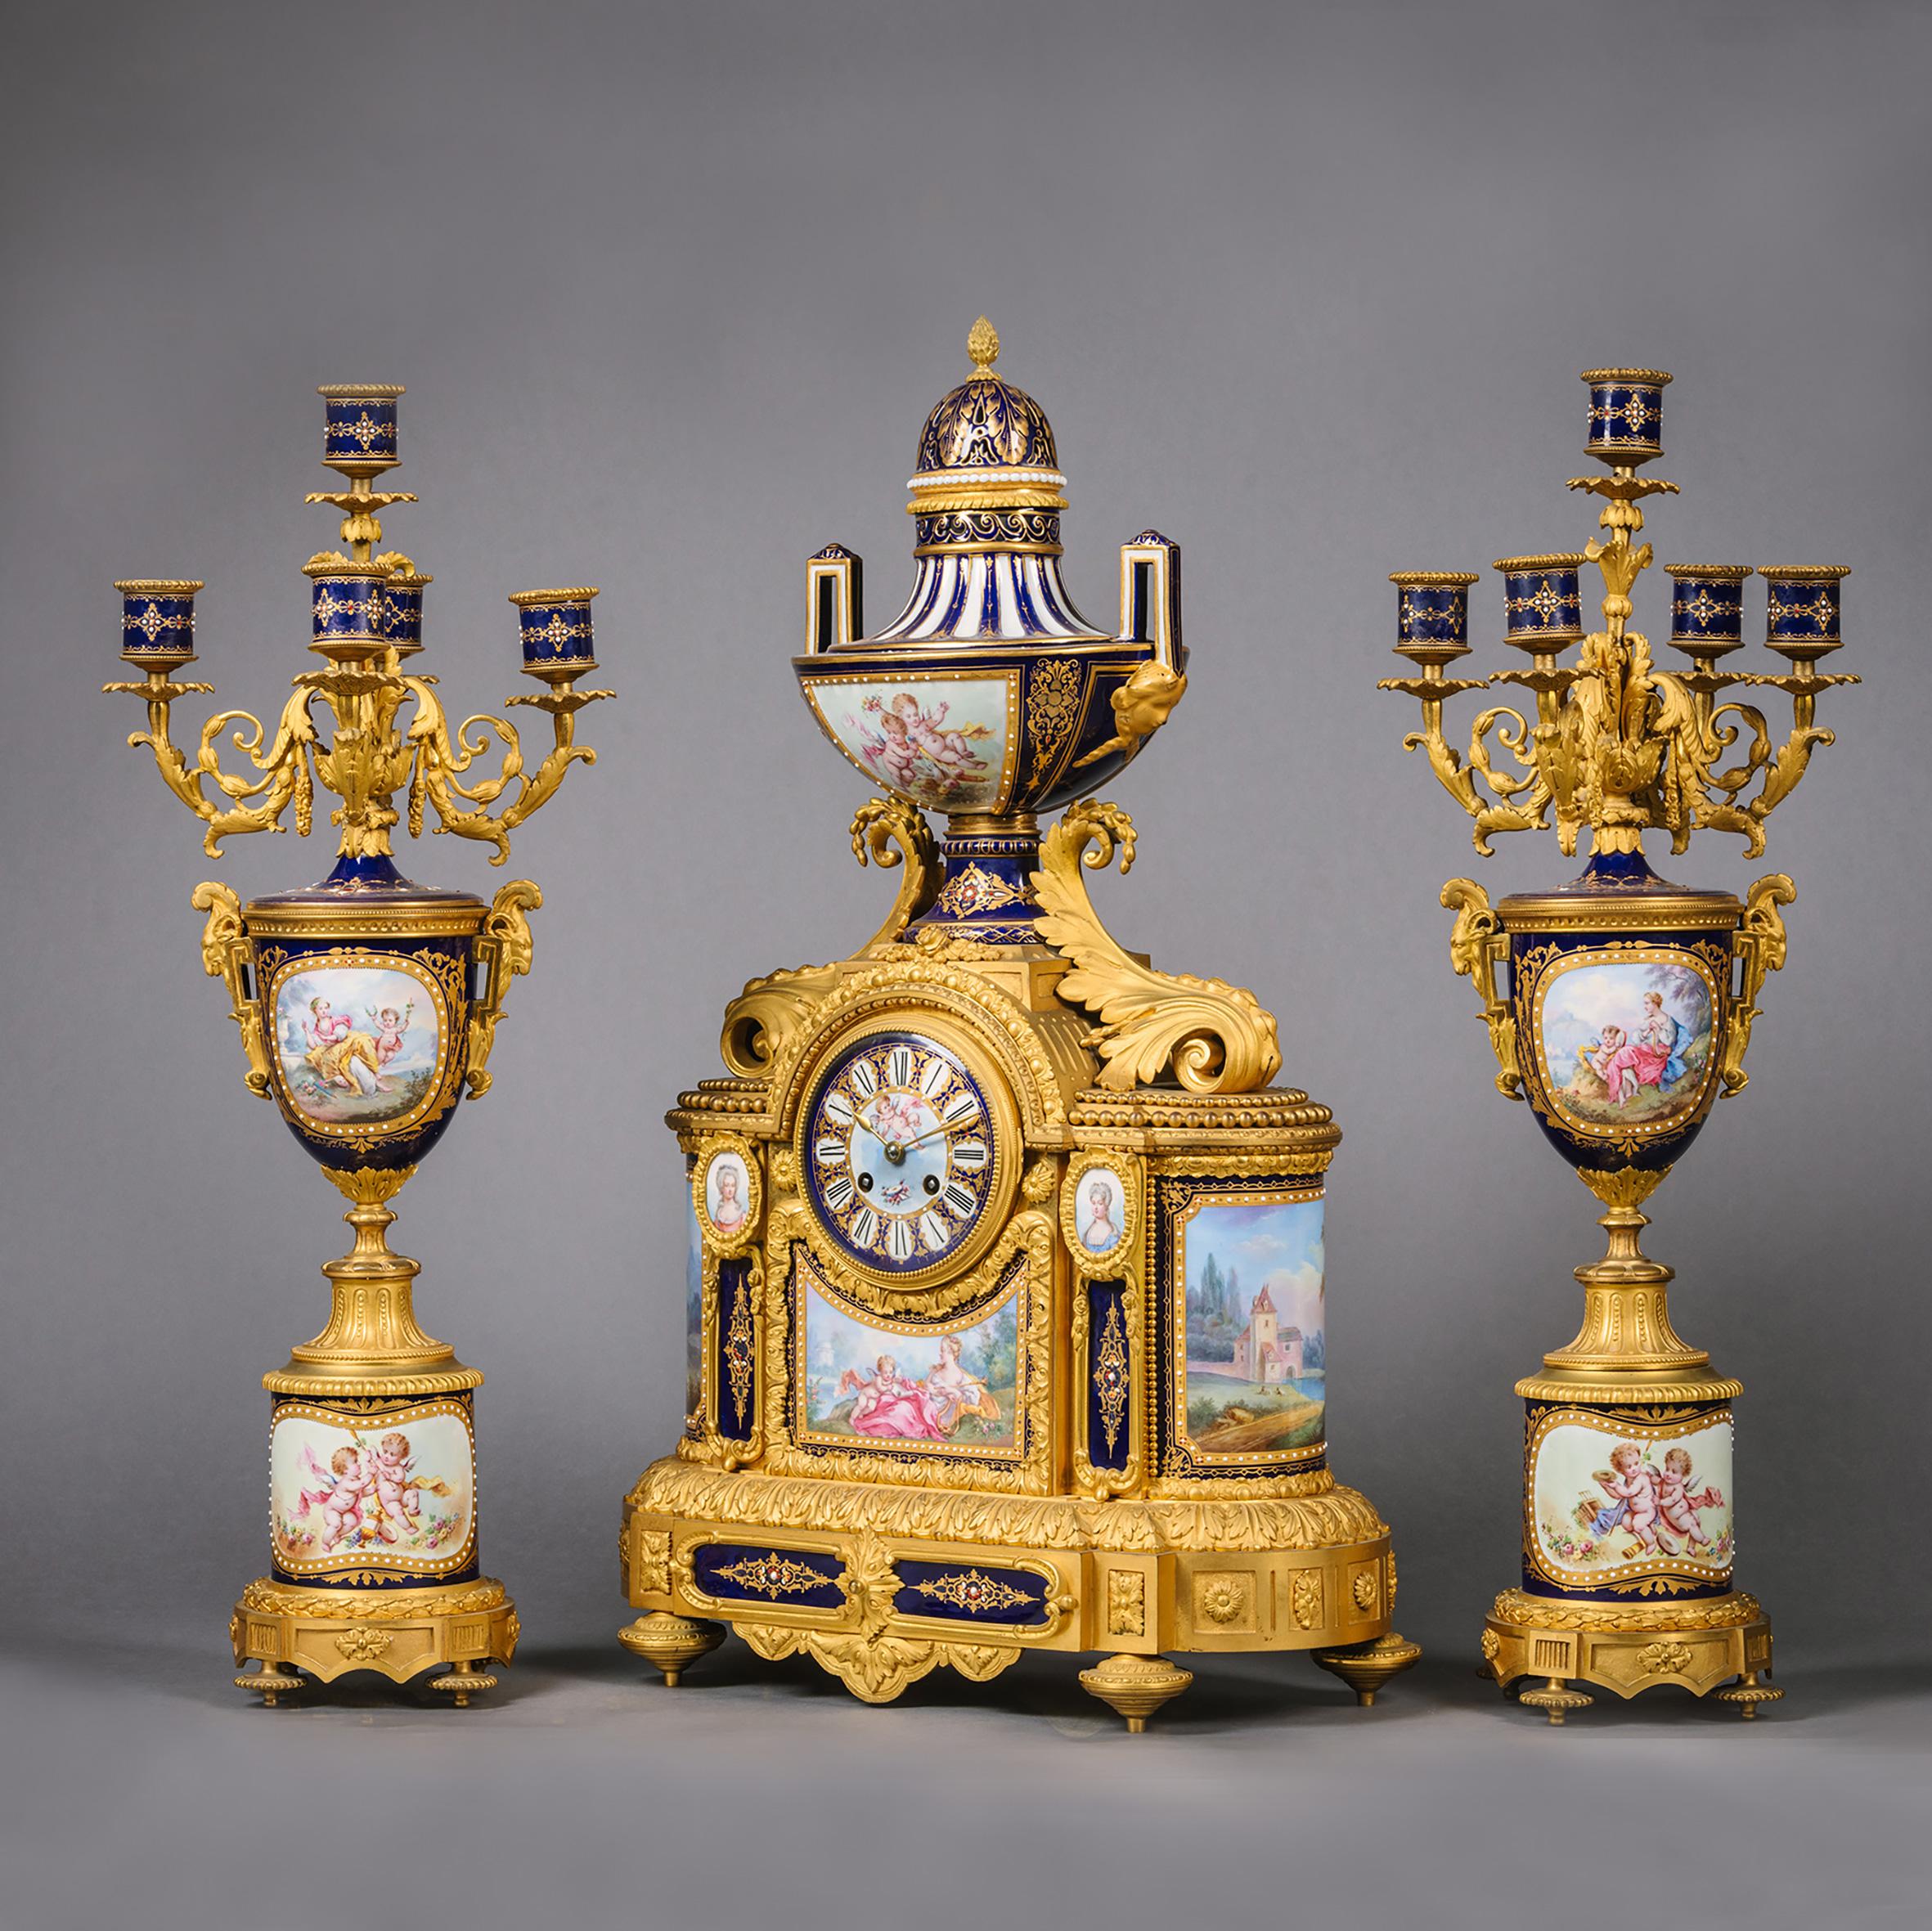 Garniture d'horloge en porcelaine de style Napoléon III, en bronze doré et bleu cobalt, de style Sèvres, en trois parties

Comprenant une horloge de cheminée et une paire de candélabres à vase à cinq lumières.

La pendule est surmontée d'une